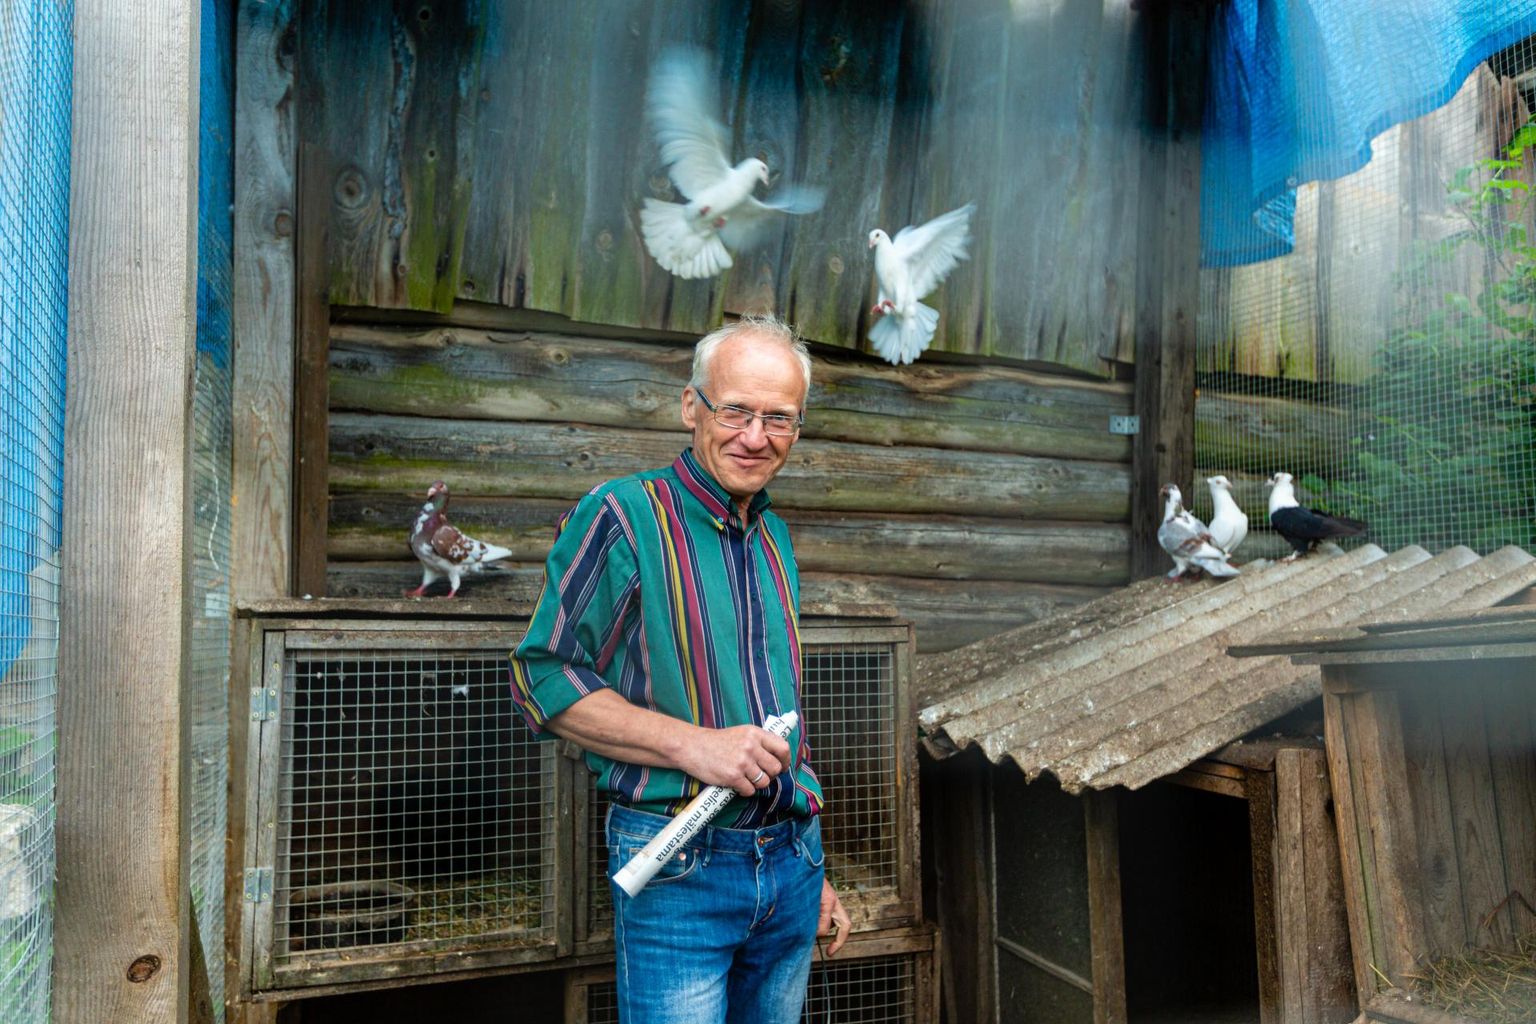 Linnupuuris askeldav Jaan Prangel ütleb, et tegelikult toimetab talus hommikust õhtuni loomade ja lindudega tema naine. Talu ühed vaatamisväärsused on ka tuvid.